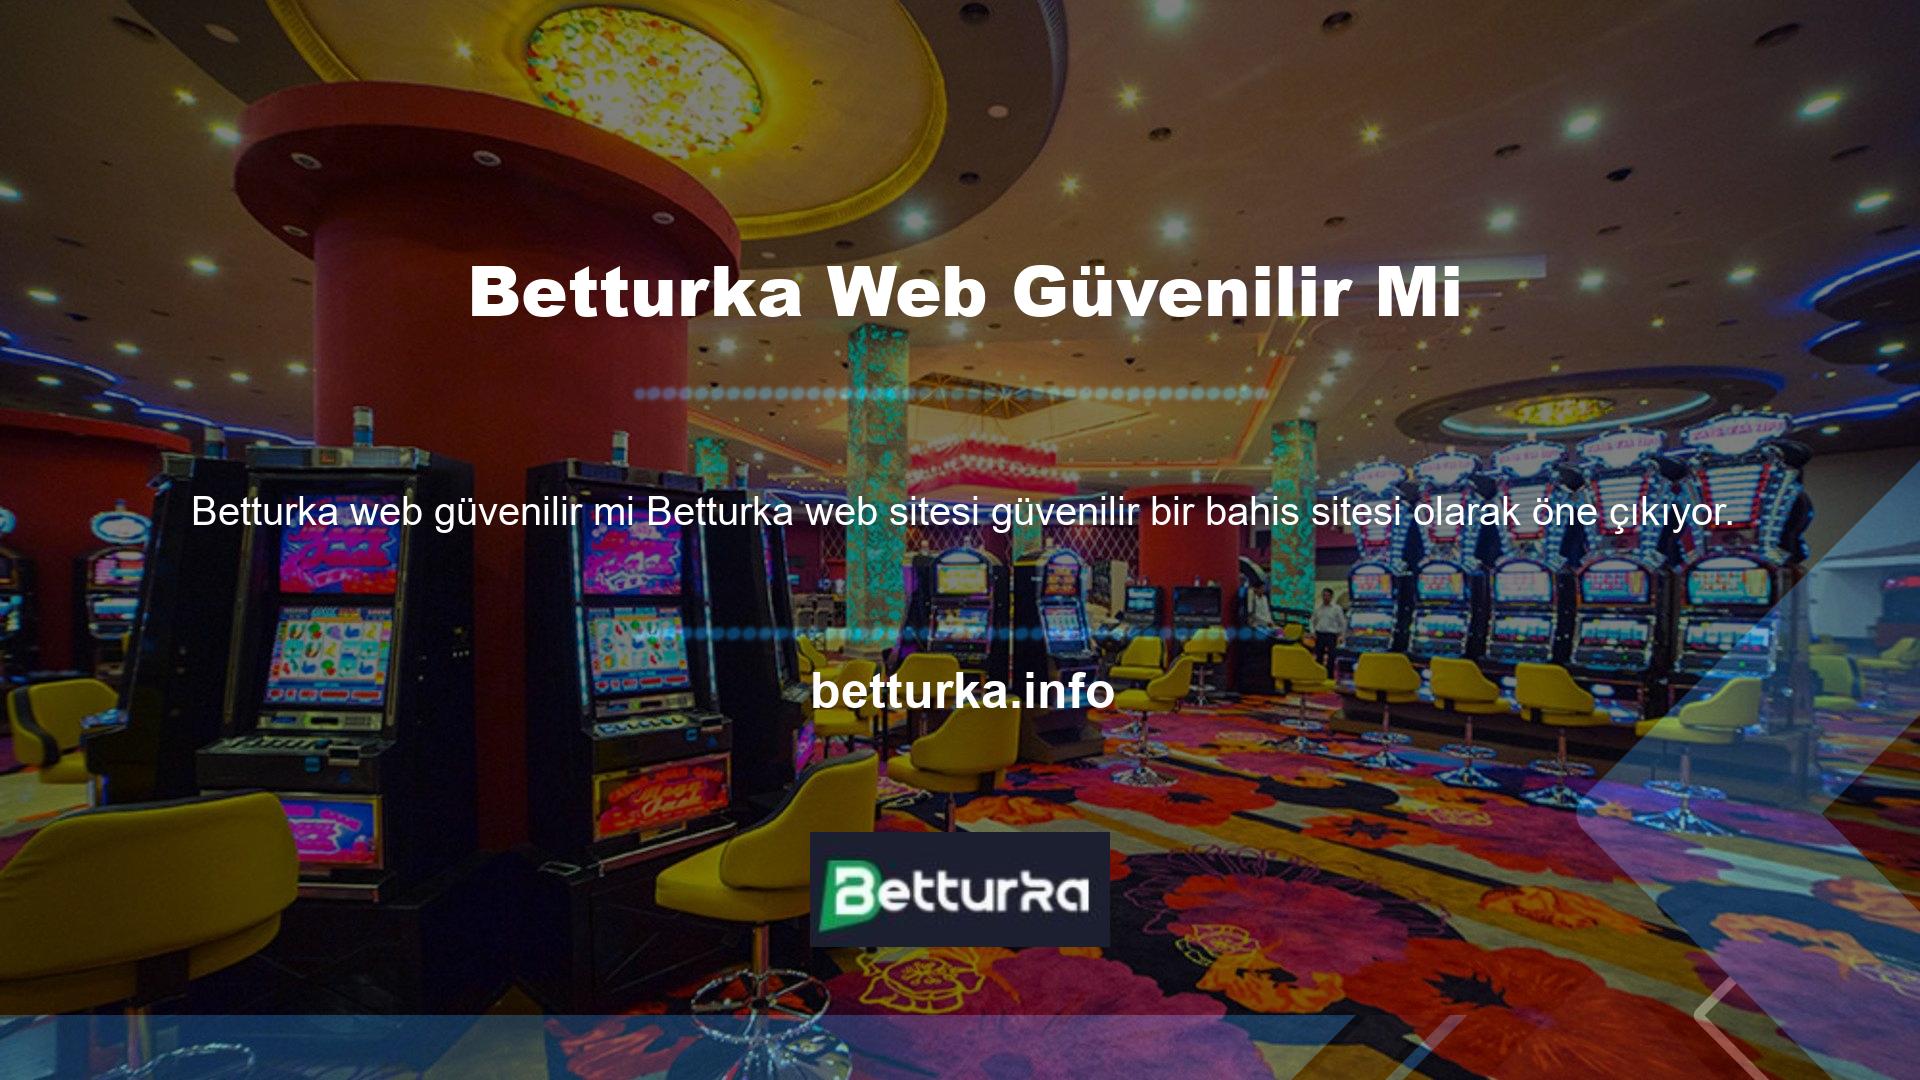 Premium hizmetler, Betturka web sitesinin içeriğinden sorumlu olan profesyonel oyun yöneticileri tarafından sağlanmaktadır